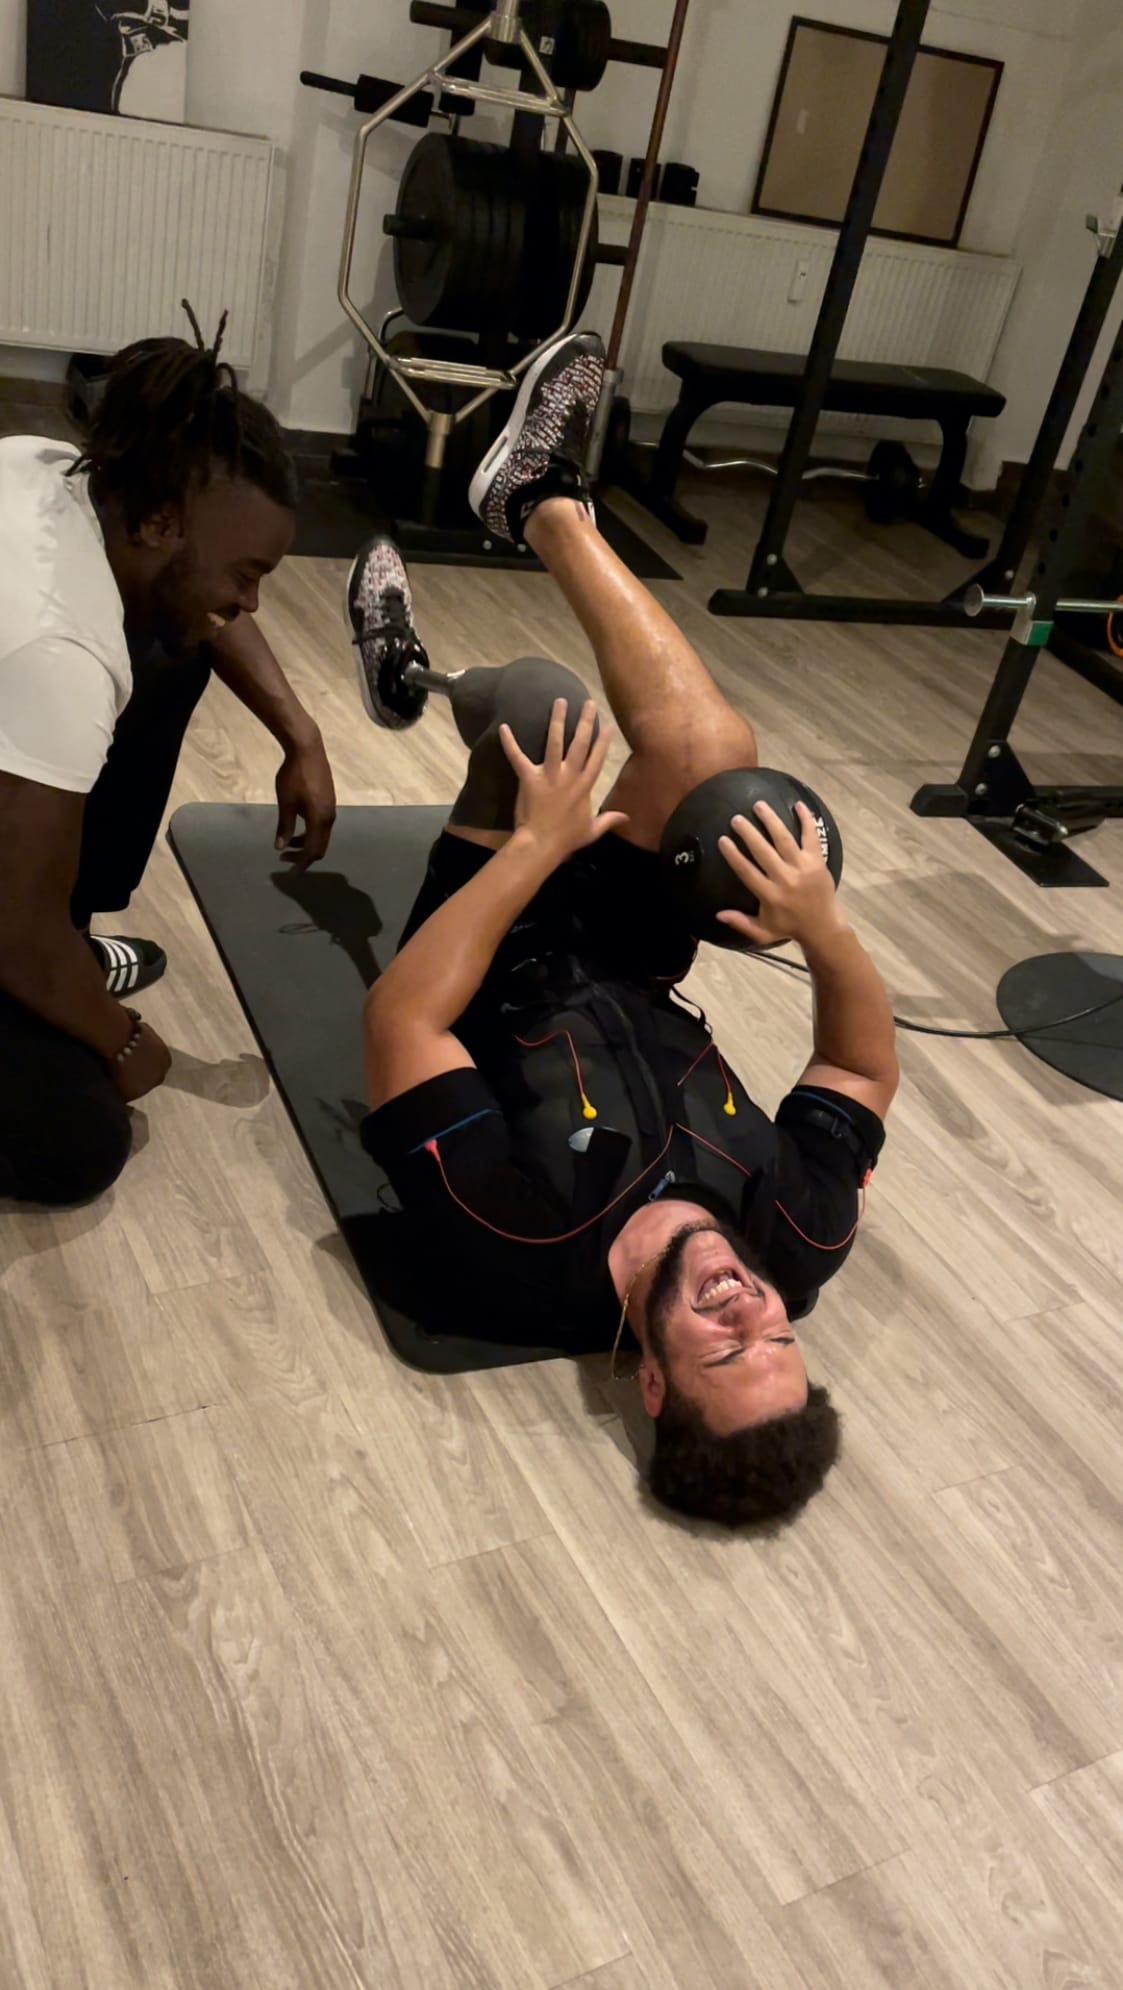 Gerard beim EMS-Training: "Am nächsten Tag habe ich immer Muskelkater im Bauch, im Arsch und in den Beinen."